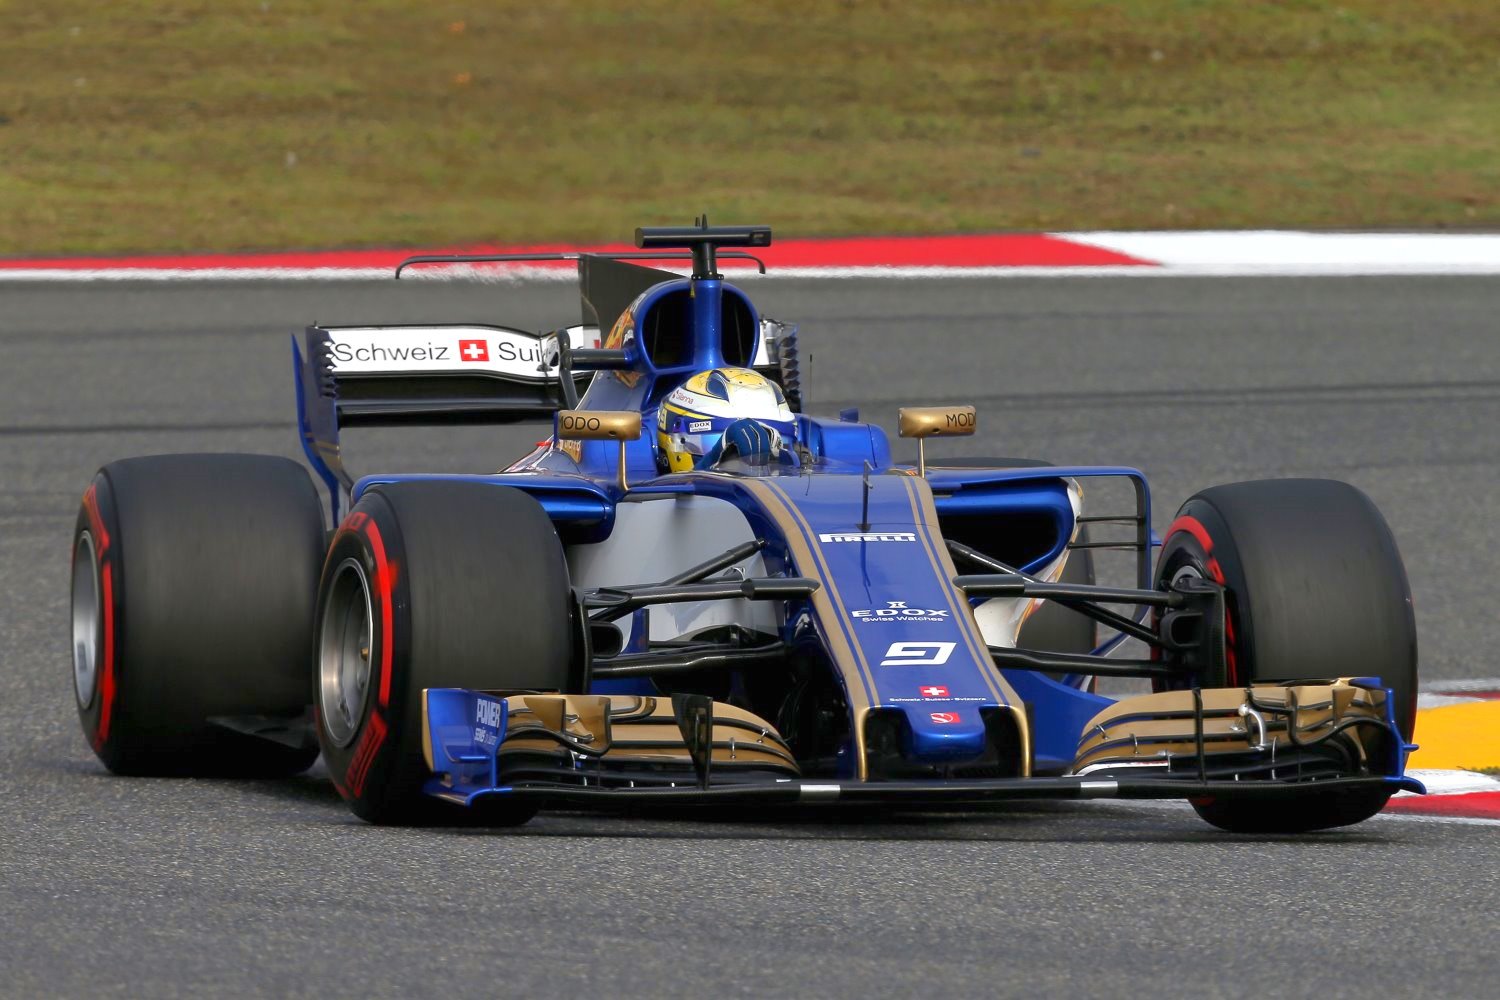 Will Sauber run Renault or Ferrari power in 2018?